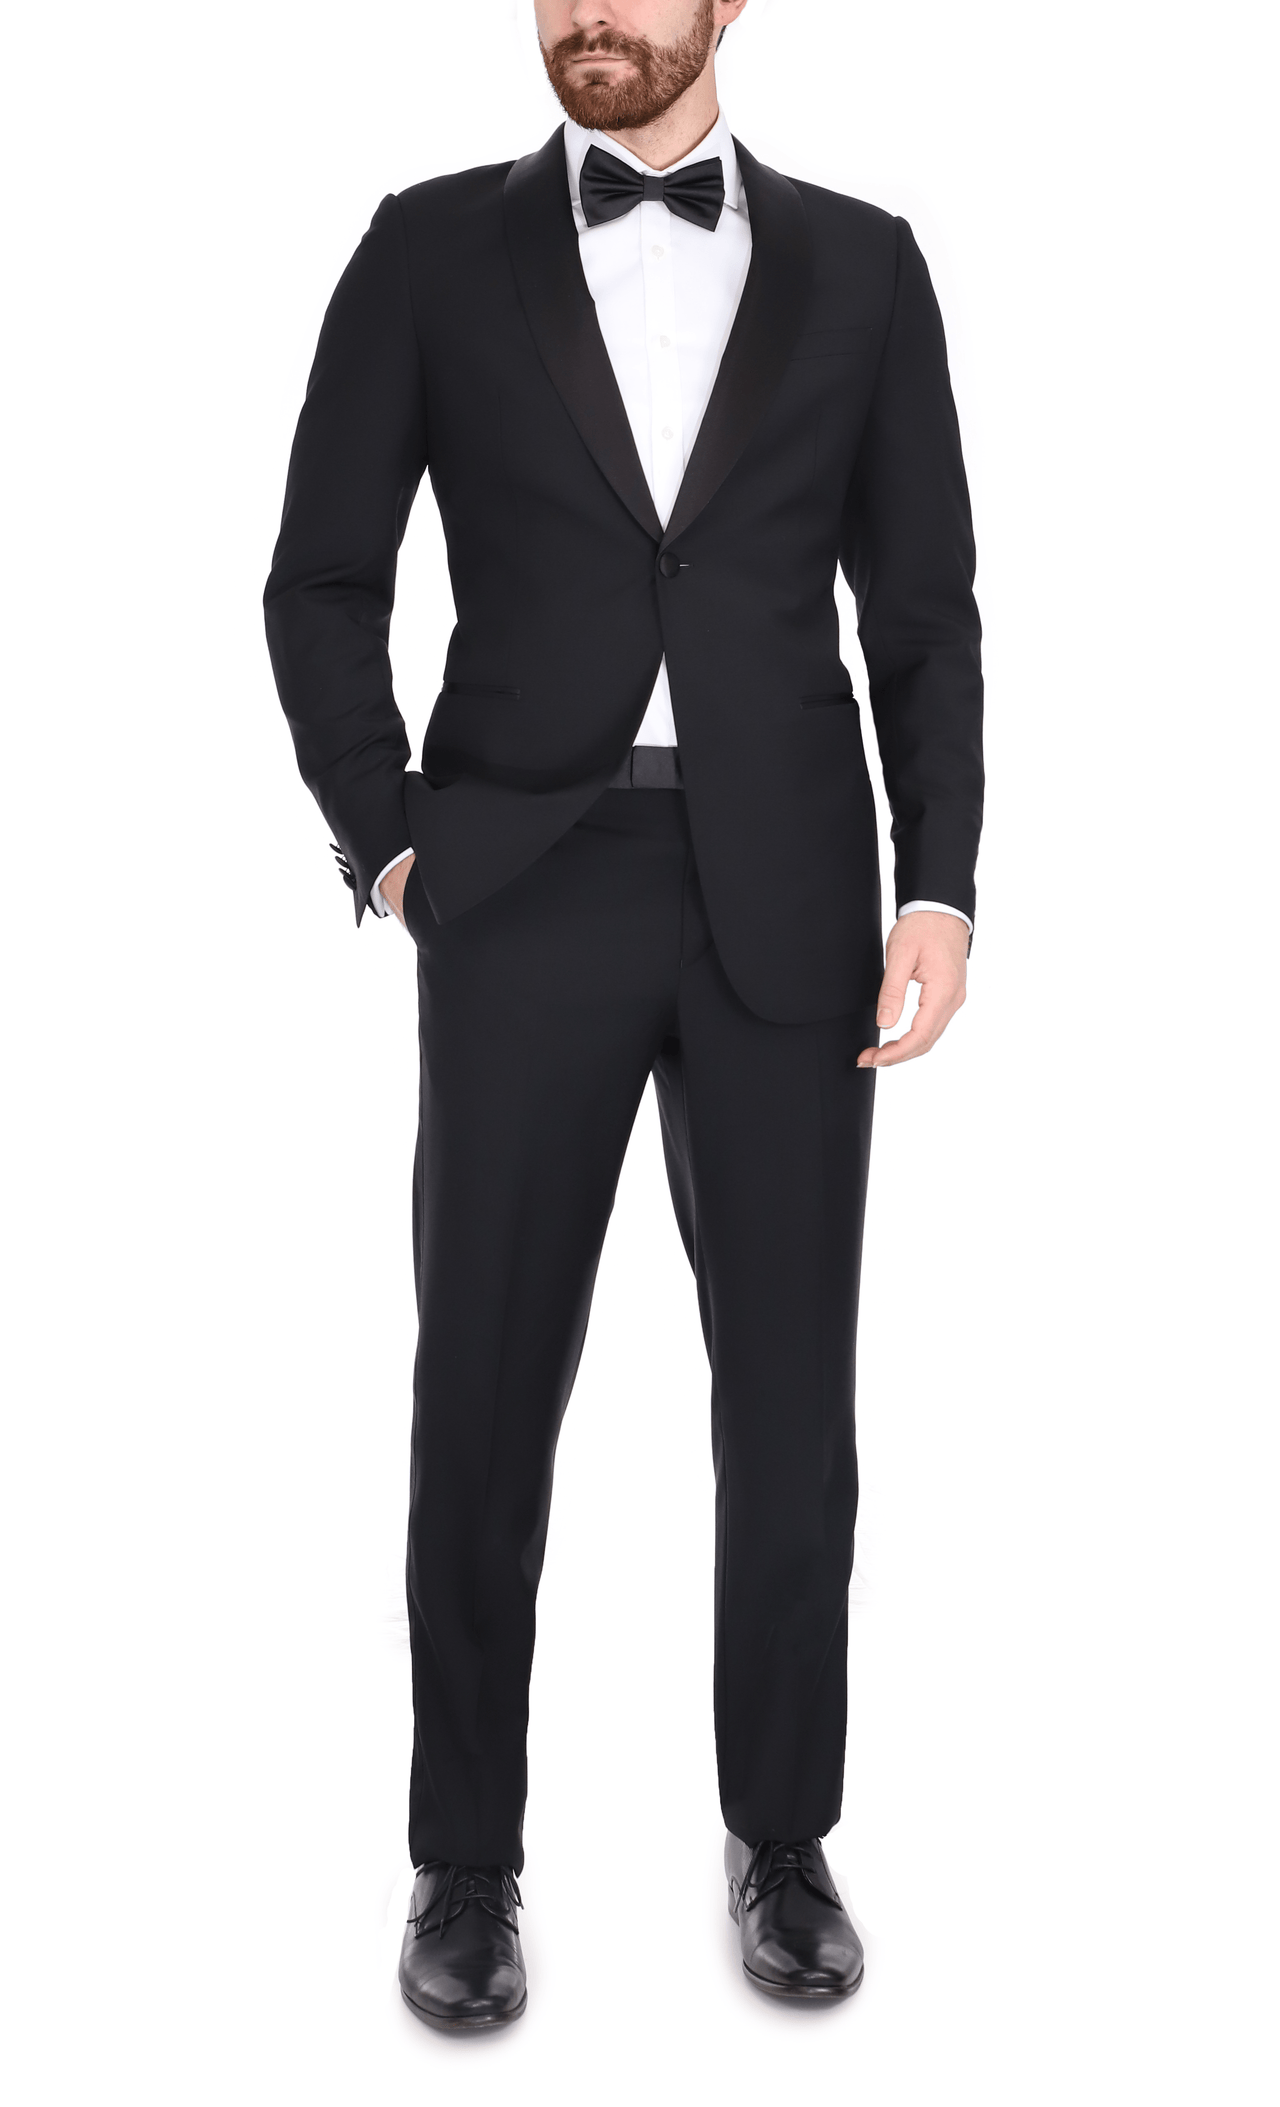 Blujacket SUITS Blujacket Men's Black Italian Wool Canvassed Slim Fit Shawl Lapel Tuxedo Suit